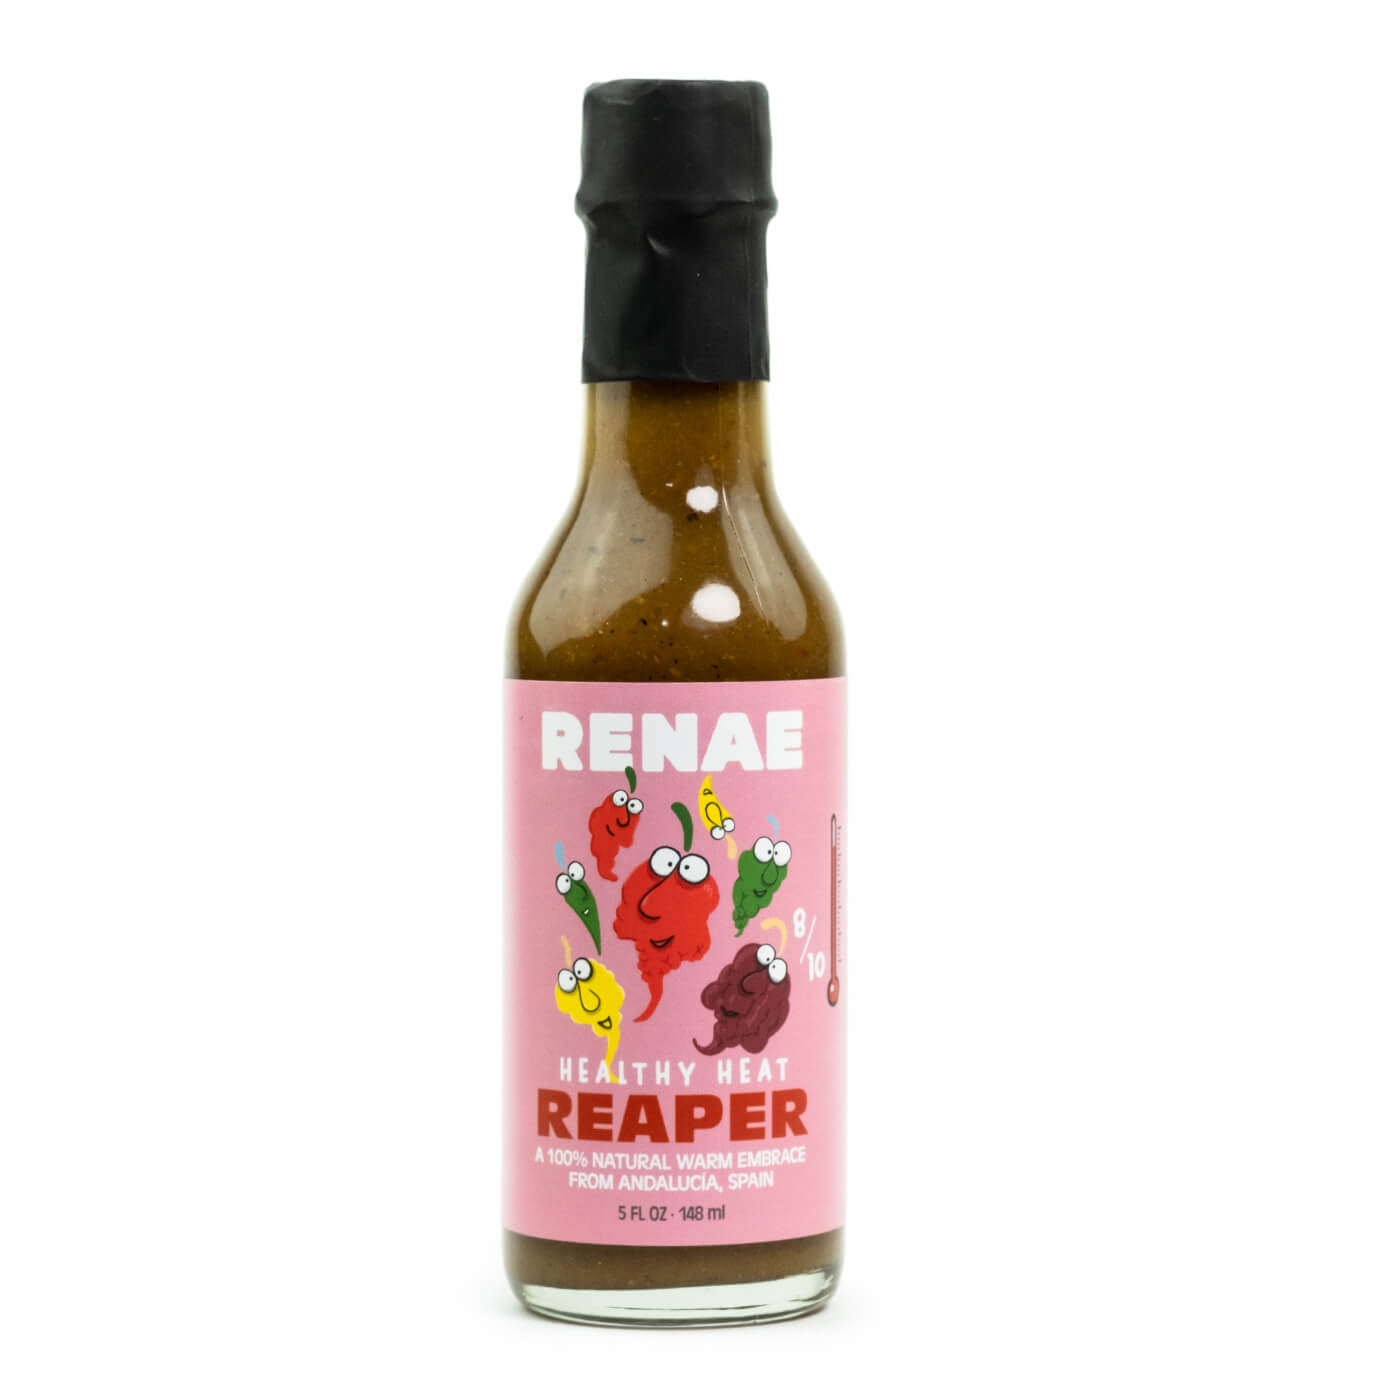 Renae Reaper hot sauce